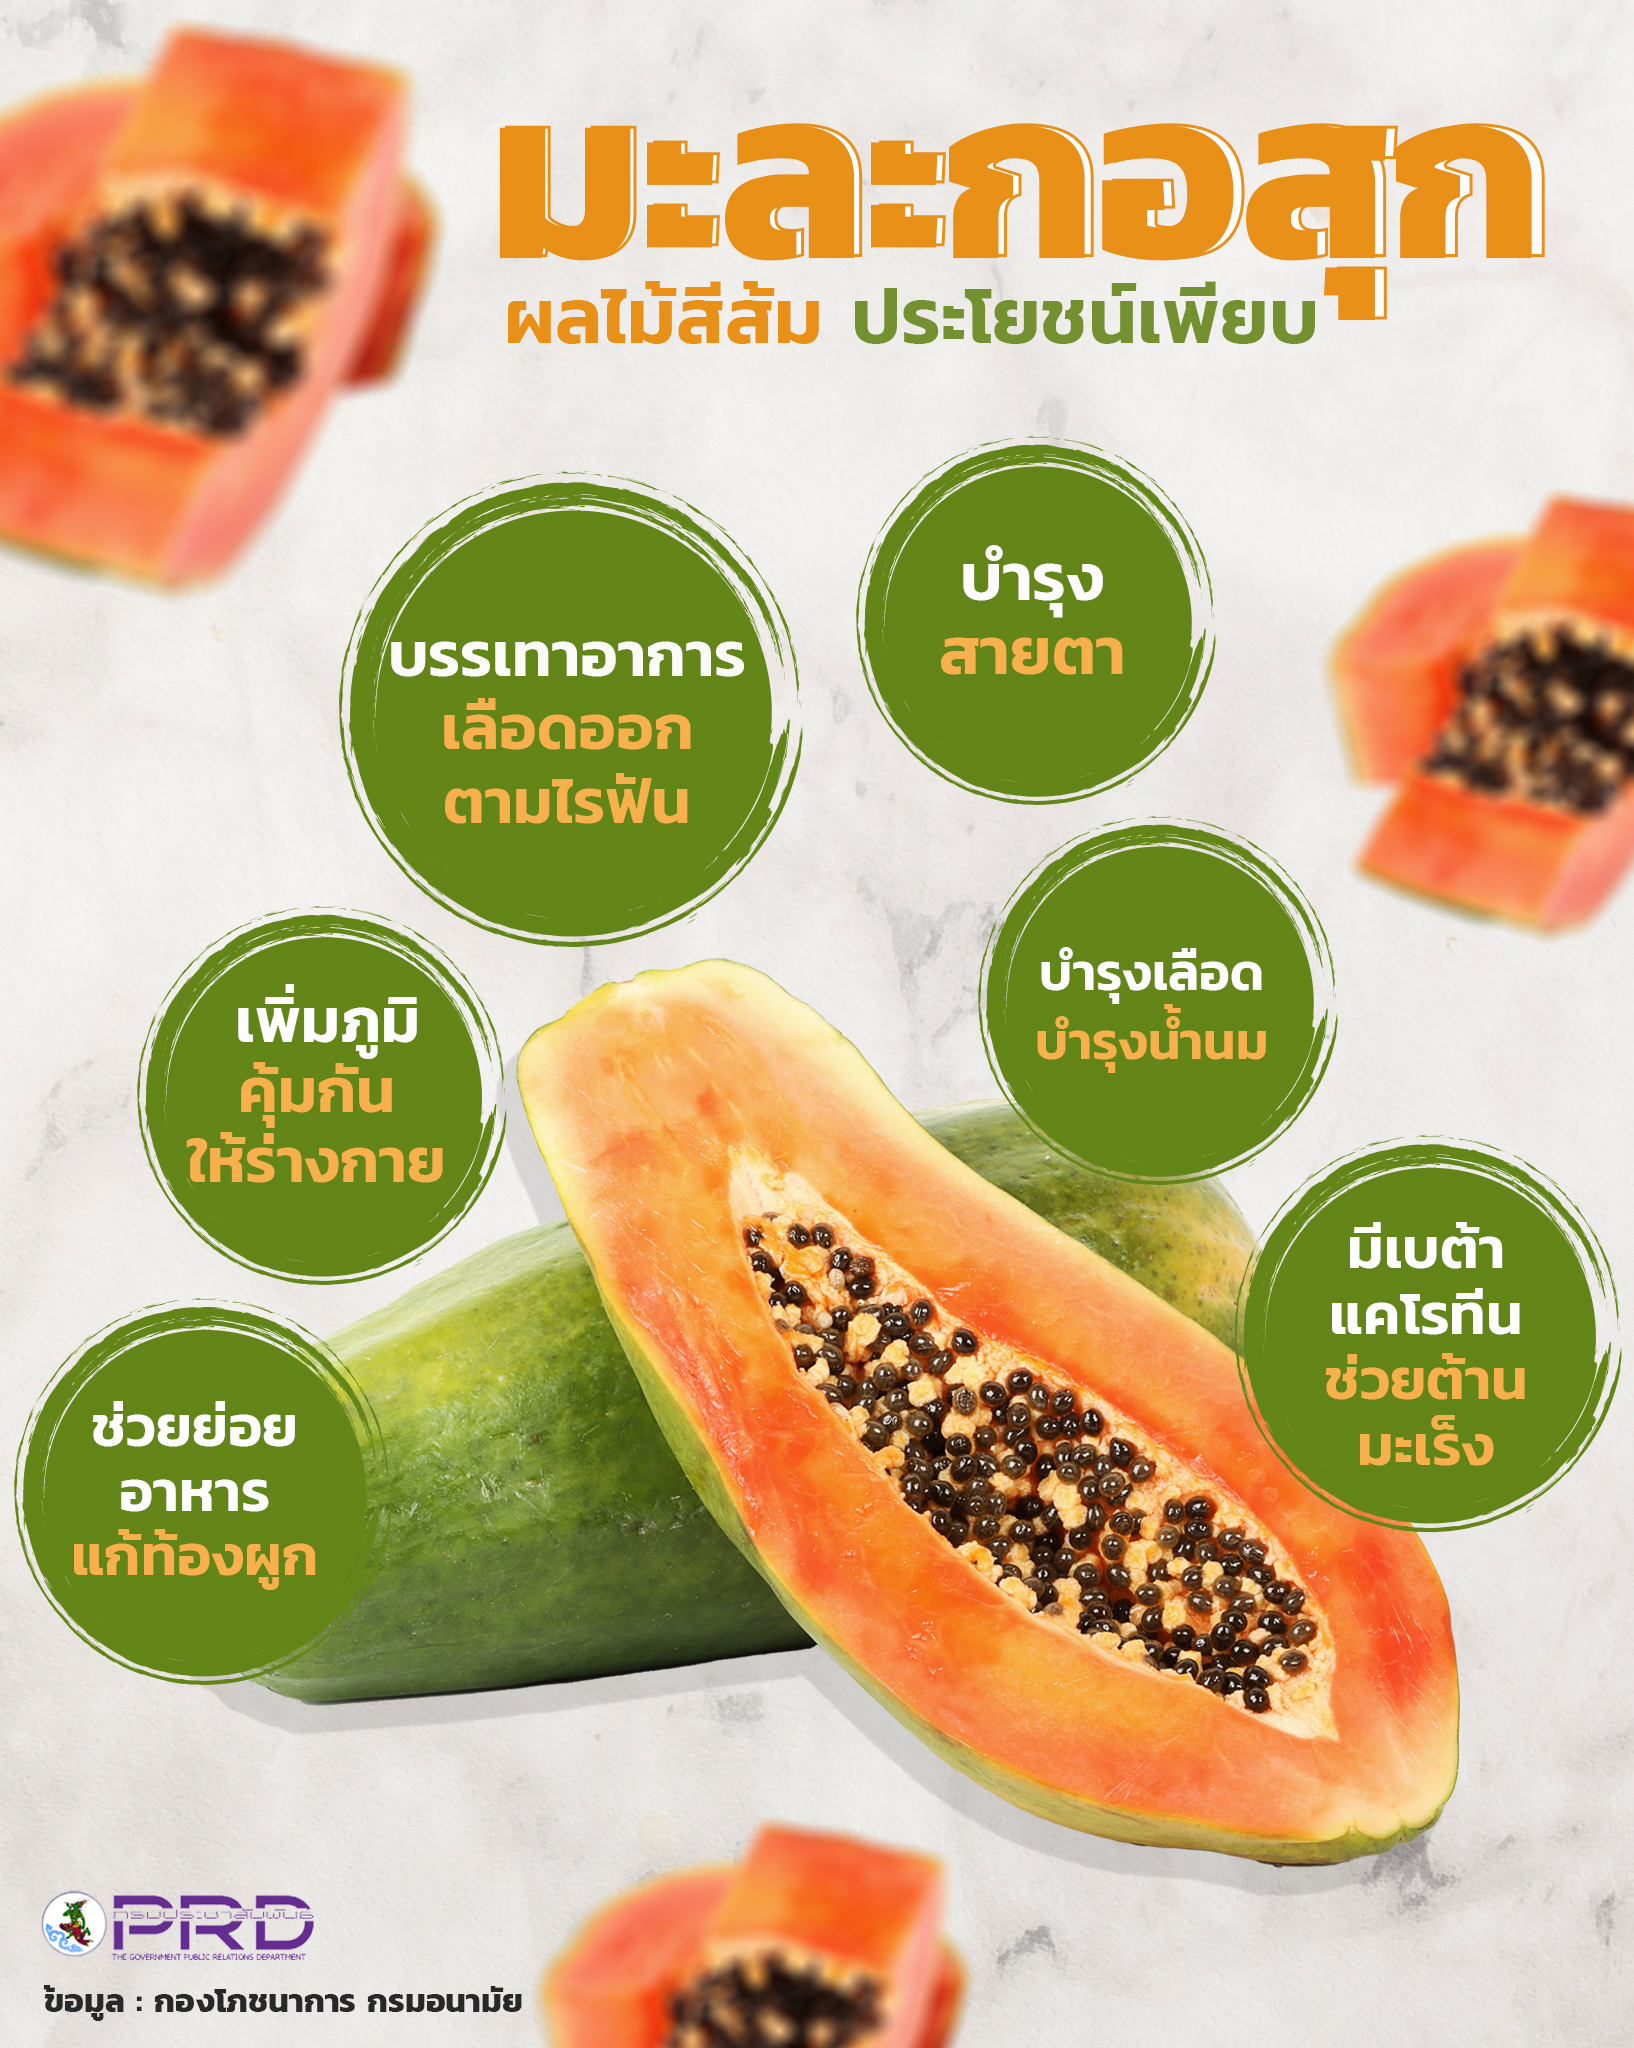 มะละกอสุก ผลไม้สีส้ม ประโยชน์เพียบ